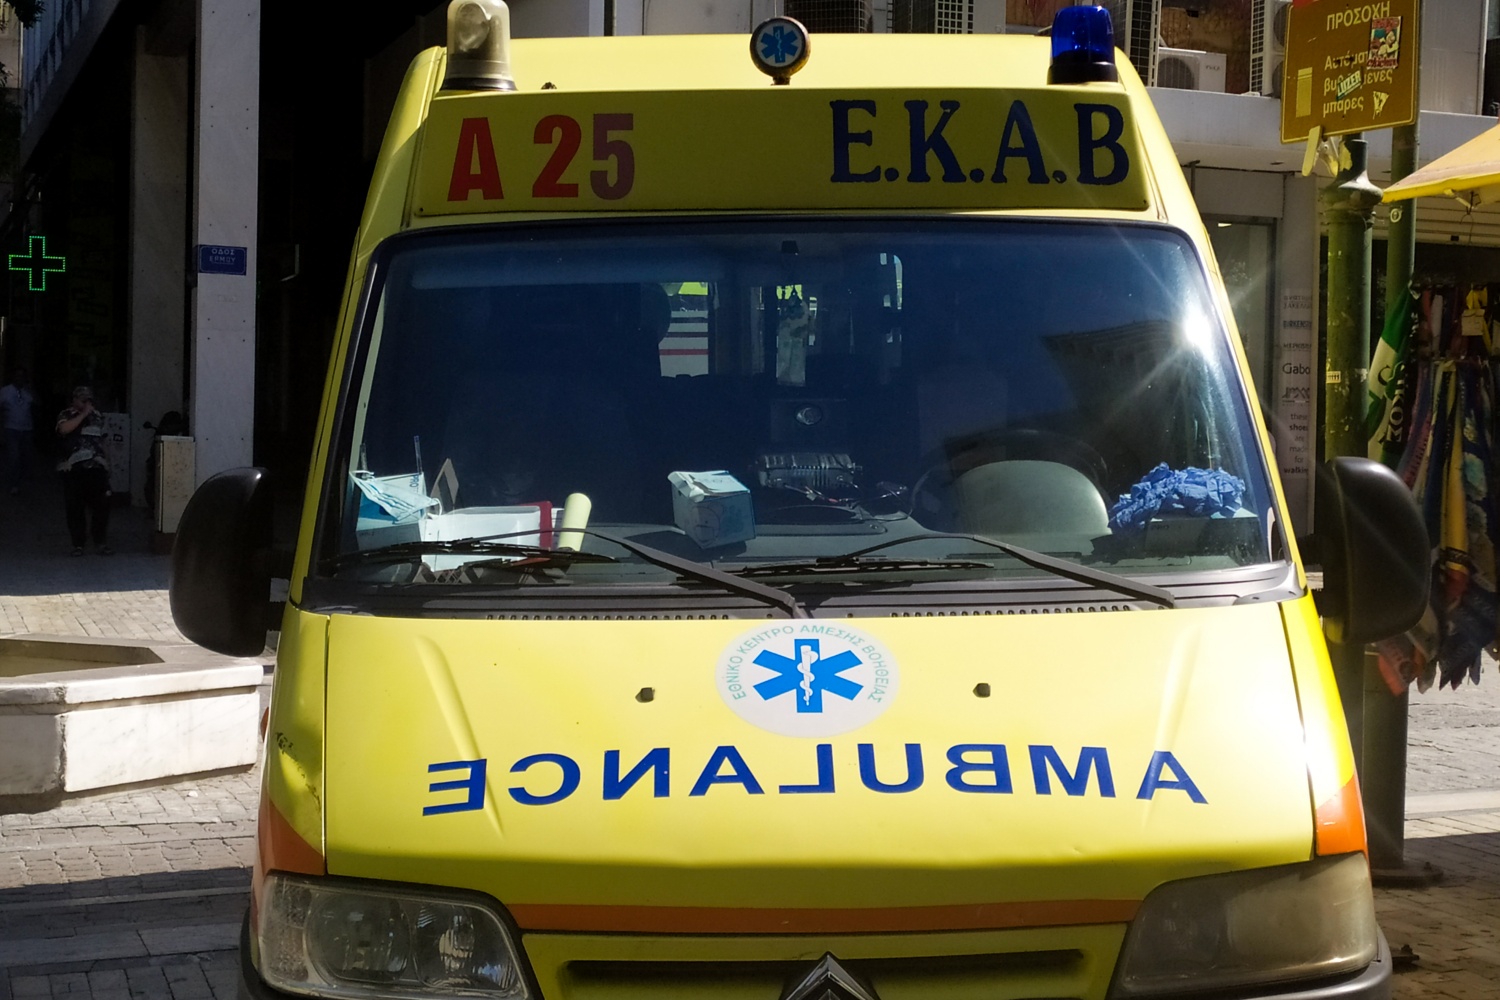 Θεσσαλονίκη: 18χρονη κρεμάστηκε από το αυτοκίνητο του πατέρα της μετά από τσακωμό και εκείνος πάτησε γκάζι